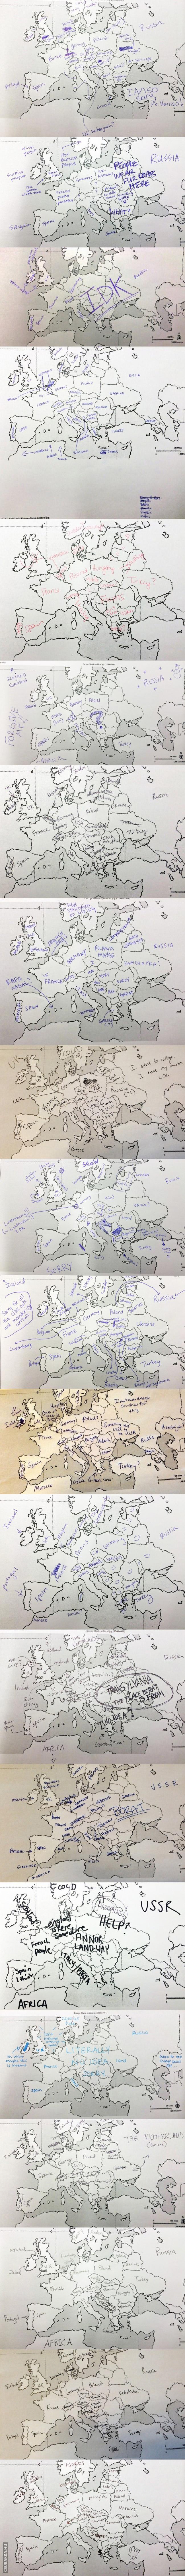 Így töltik ki az amerikai diákok az Európa vaktérképet Amerika vaktérkép Képek európa diákok